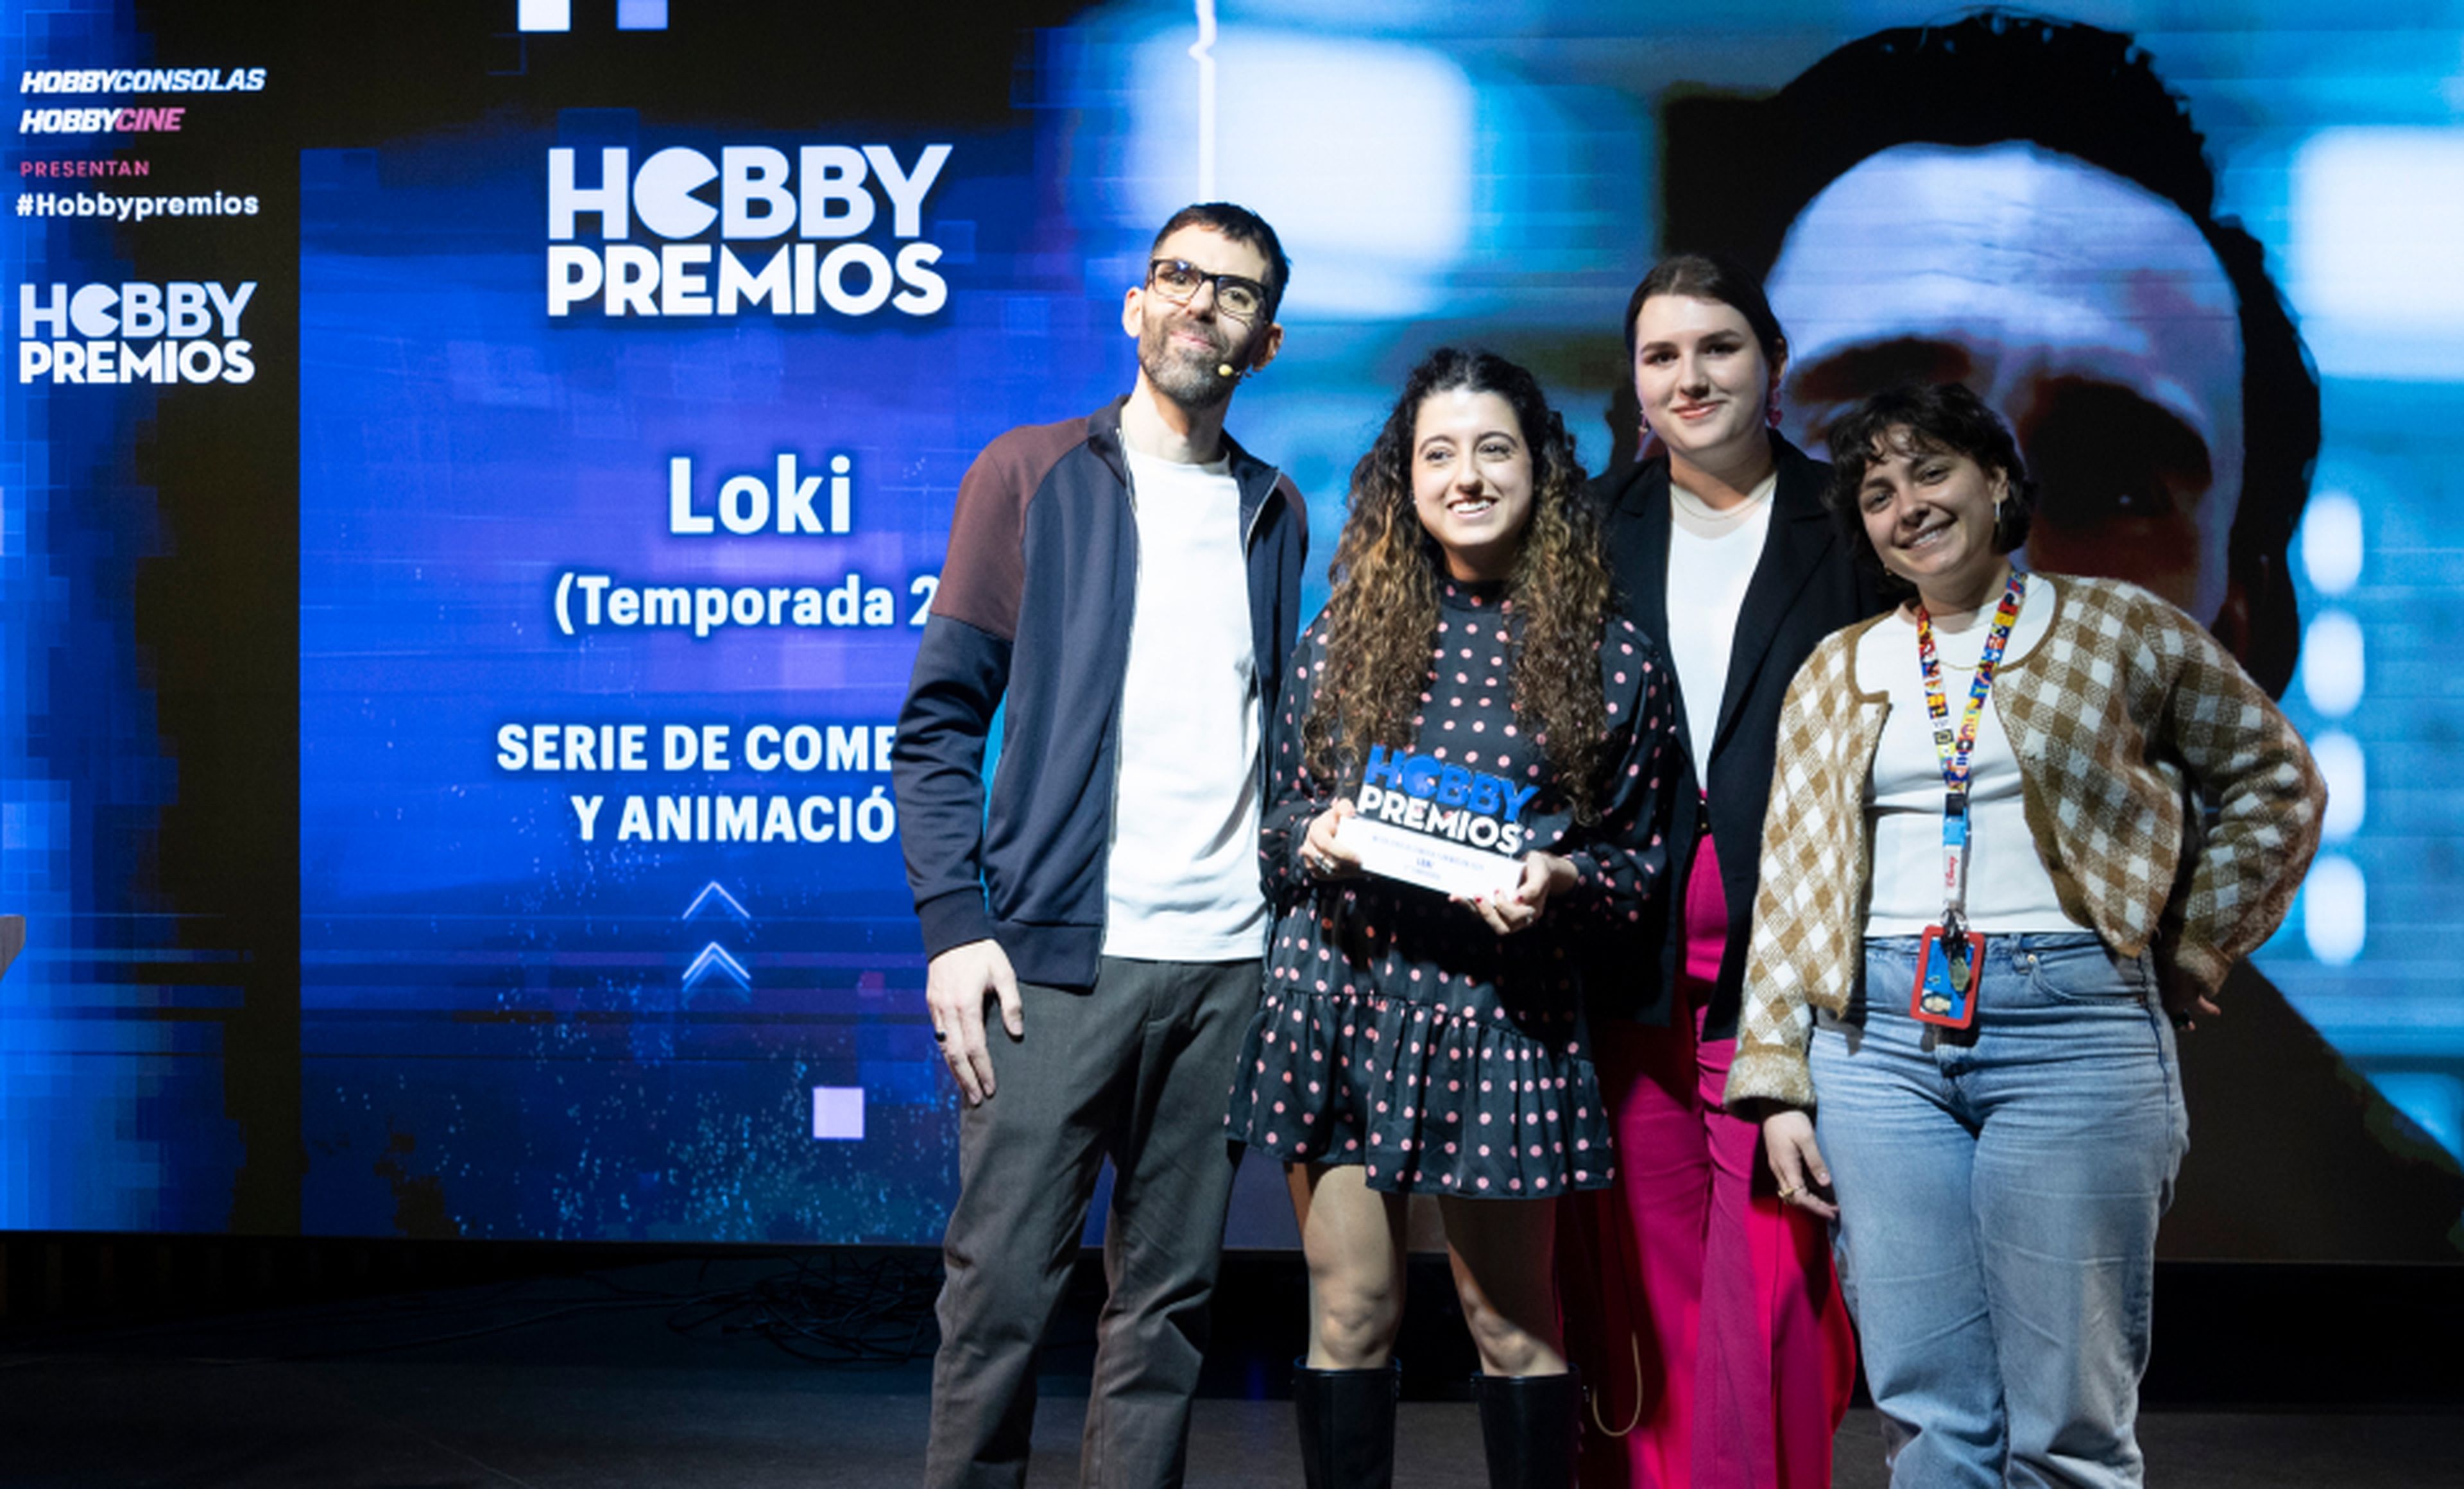 De izquierda a derecha: Ekaitz Ortega, coordinador de HobbyCine junto al equipo de PR de Disney recogiendo el premio a mejor serie de comedia y animación para Loki (Temporada 2).